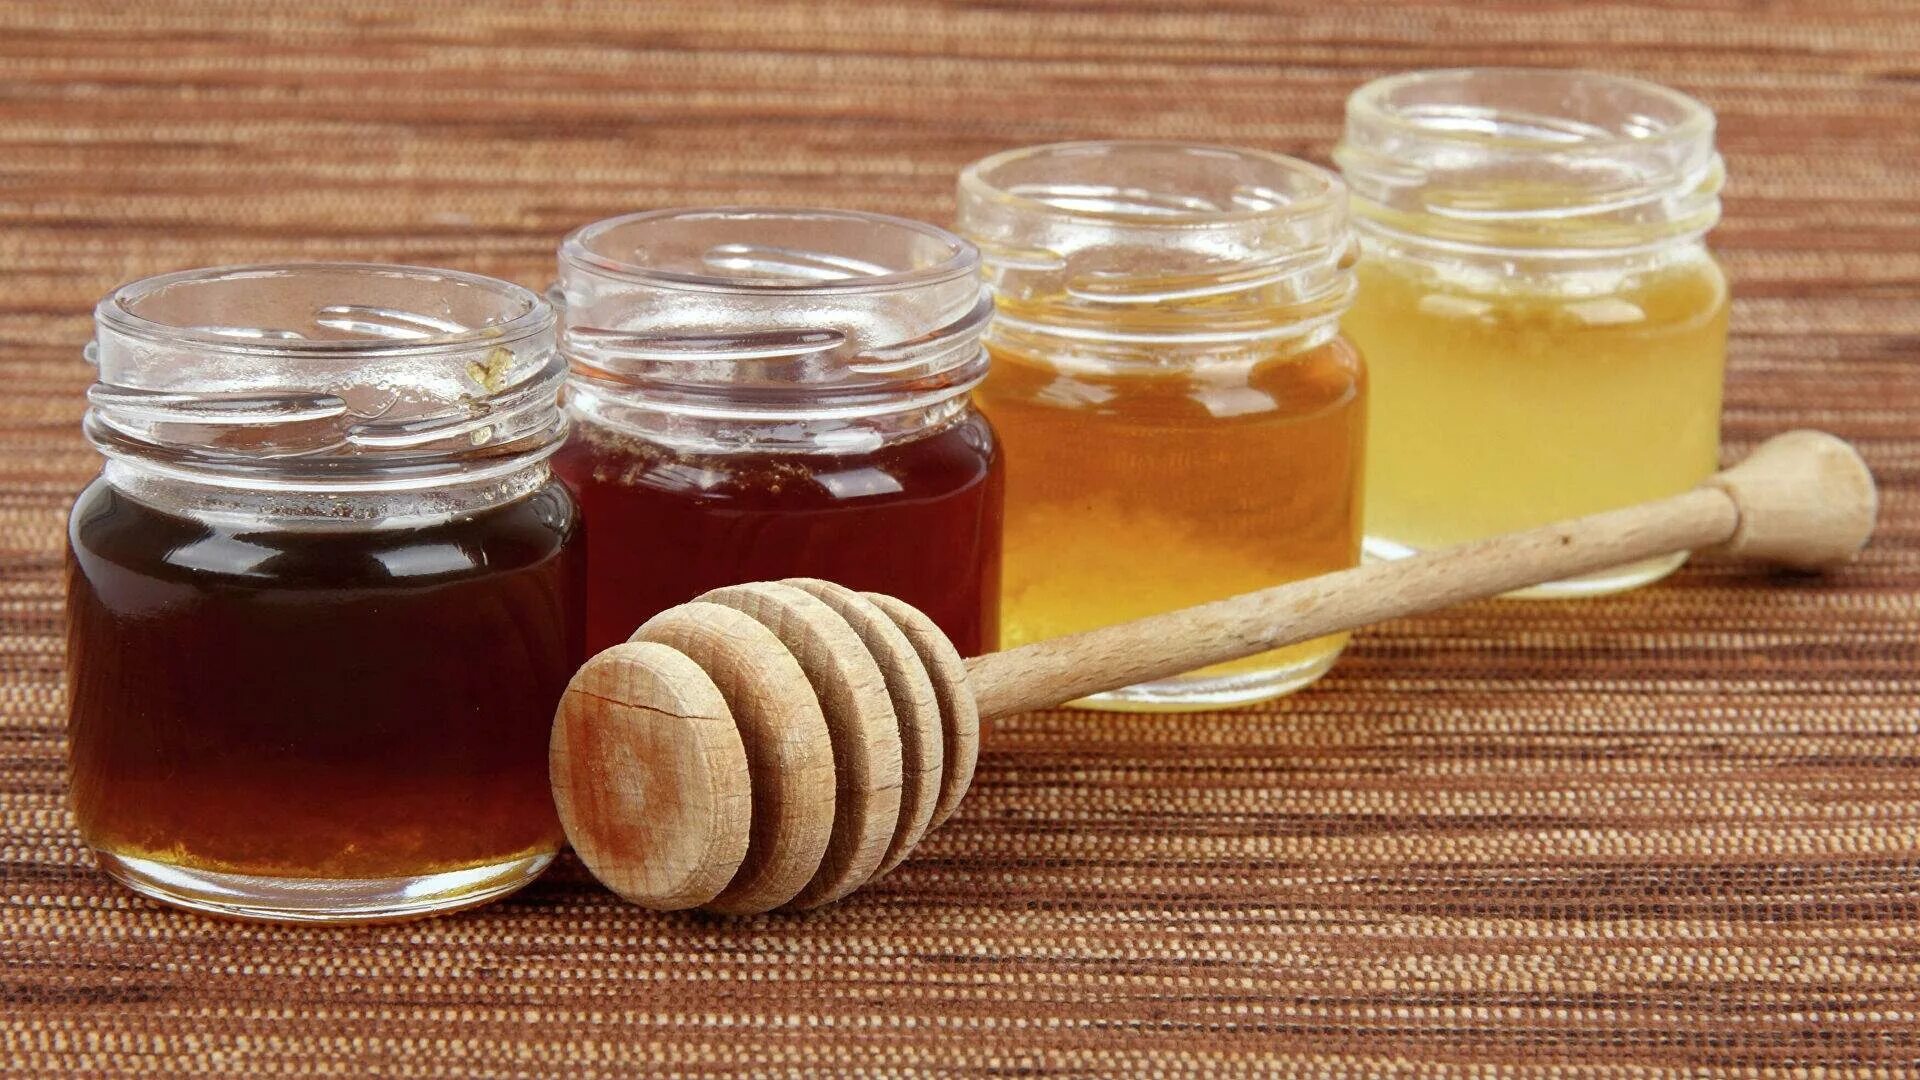 Вкушая вкусив мало меда. Падевый мёд. Цветочный и падевый мед. Смешанный мед. Мед разный.